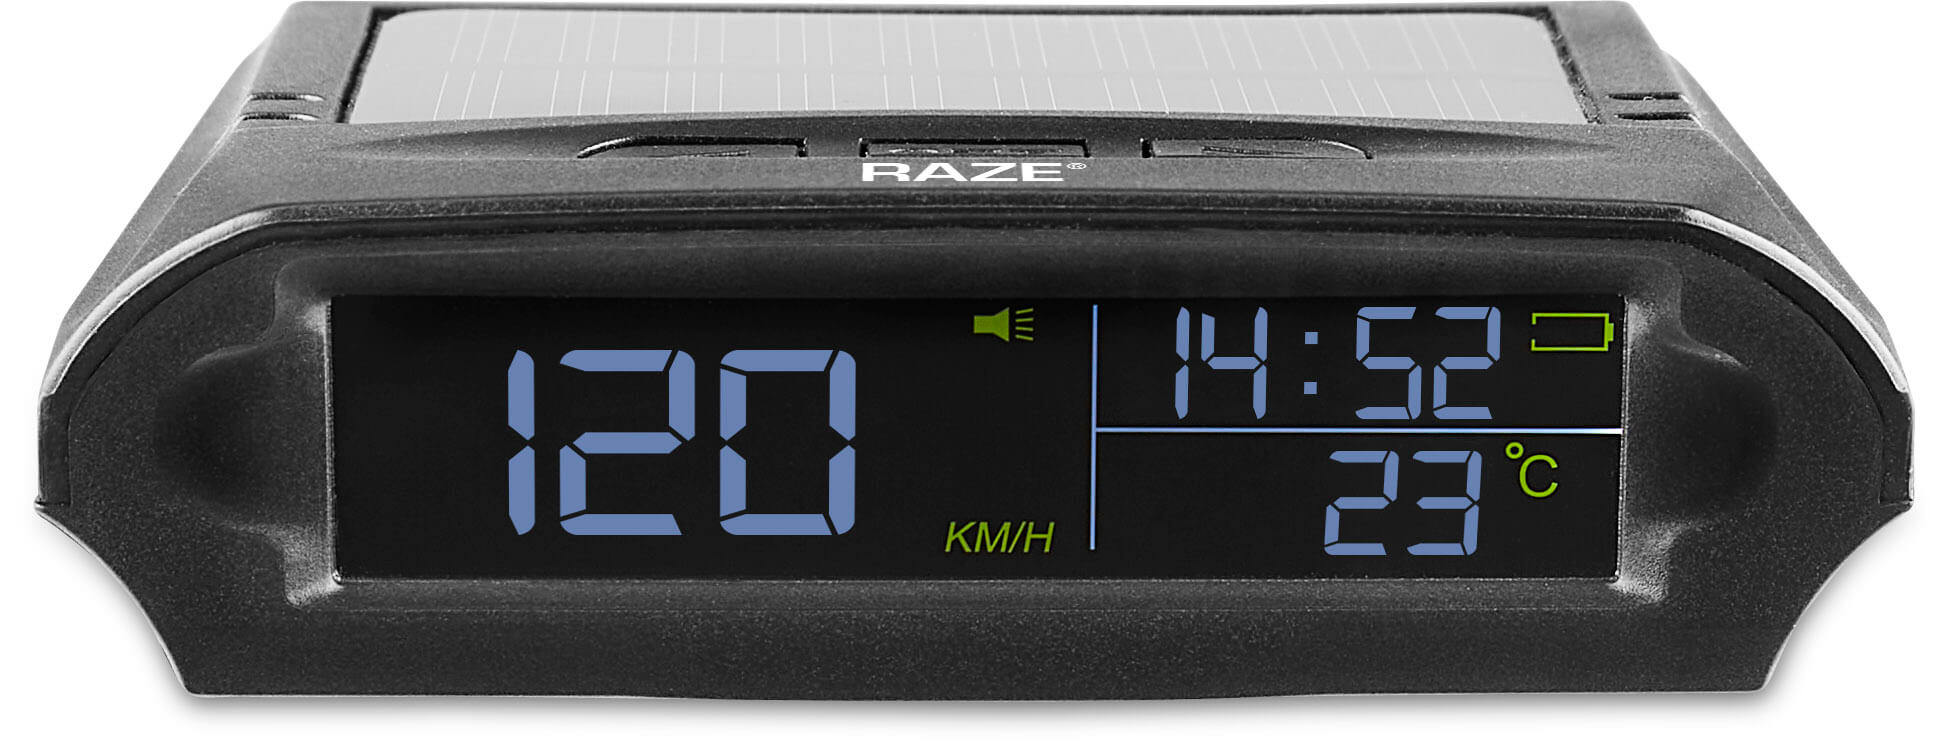 Smart displays / OBD2 gauges